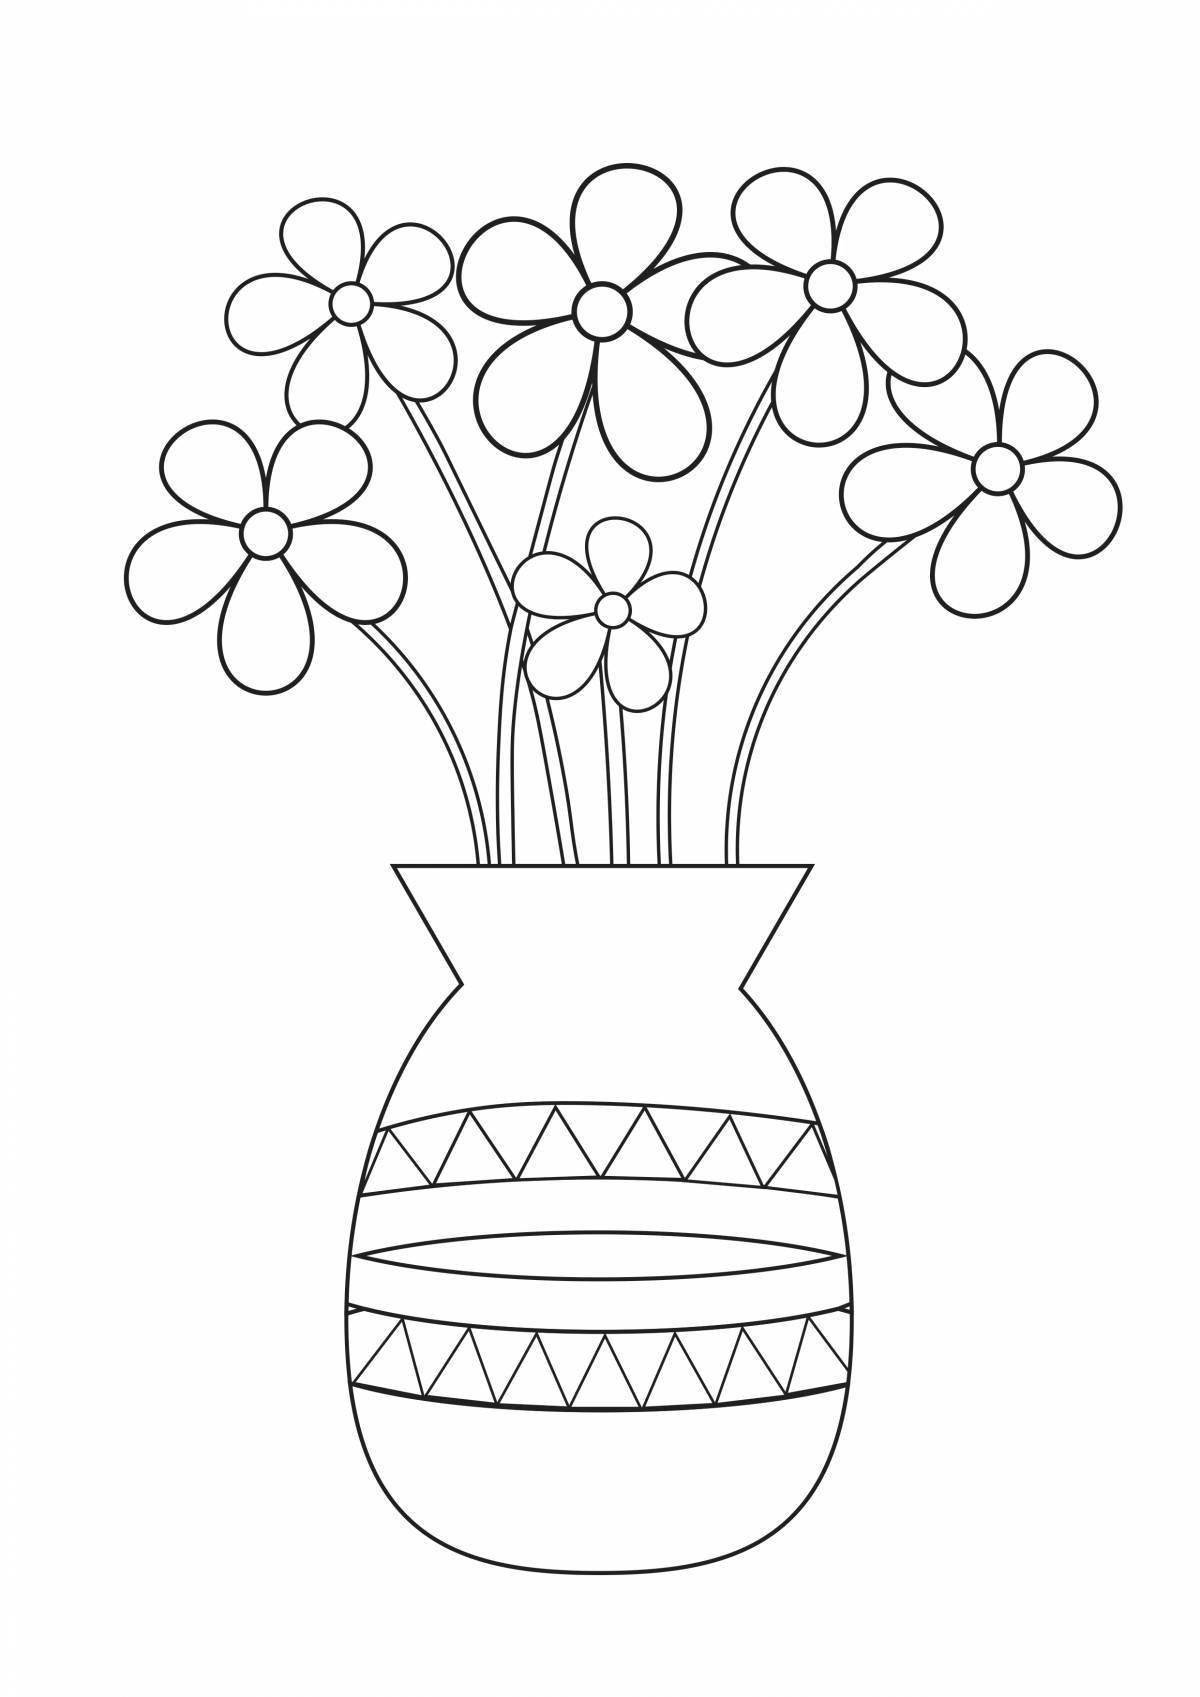 Шаблоны и трафарет вазы для вырезания из бумаги: скачать и распечатать